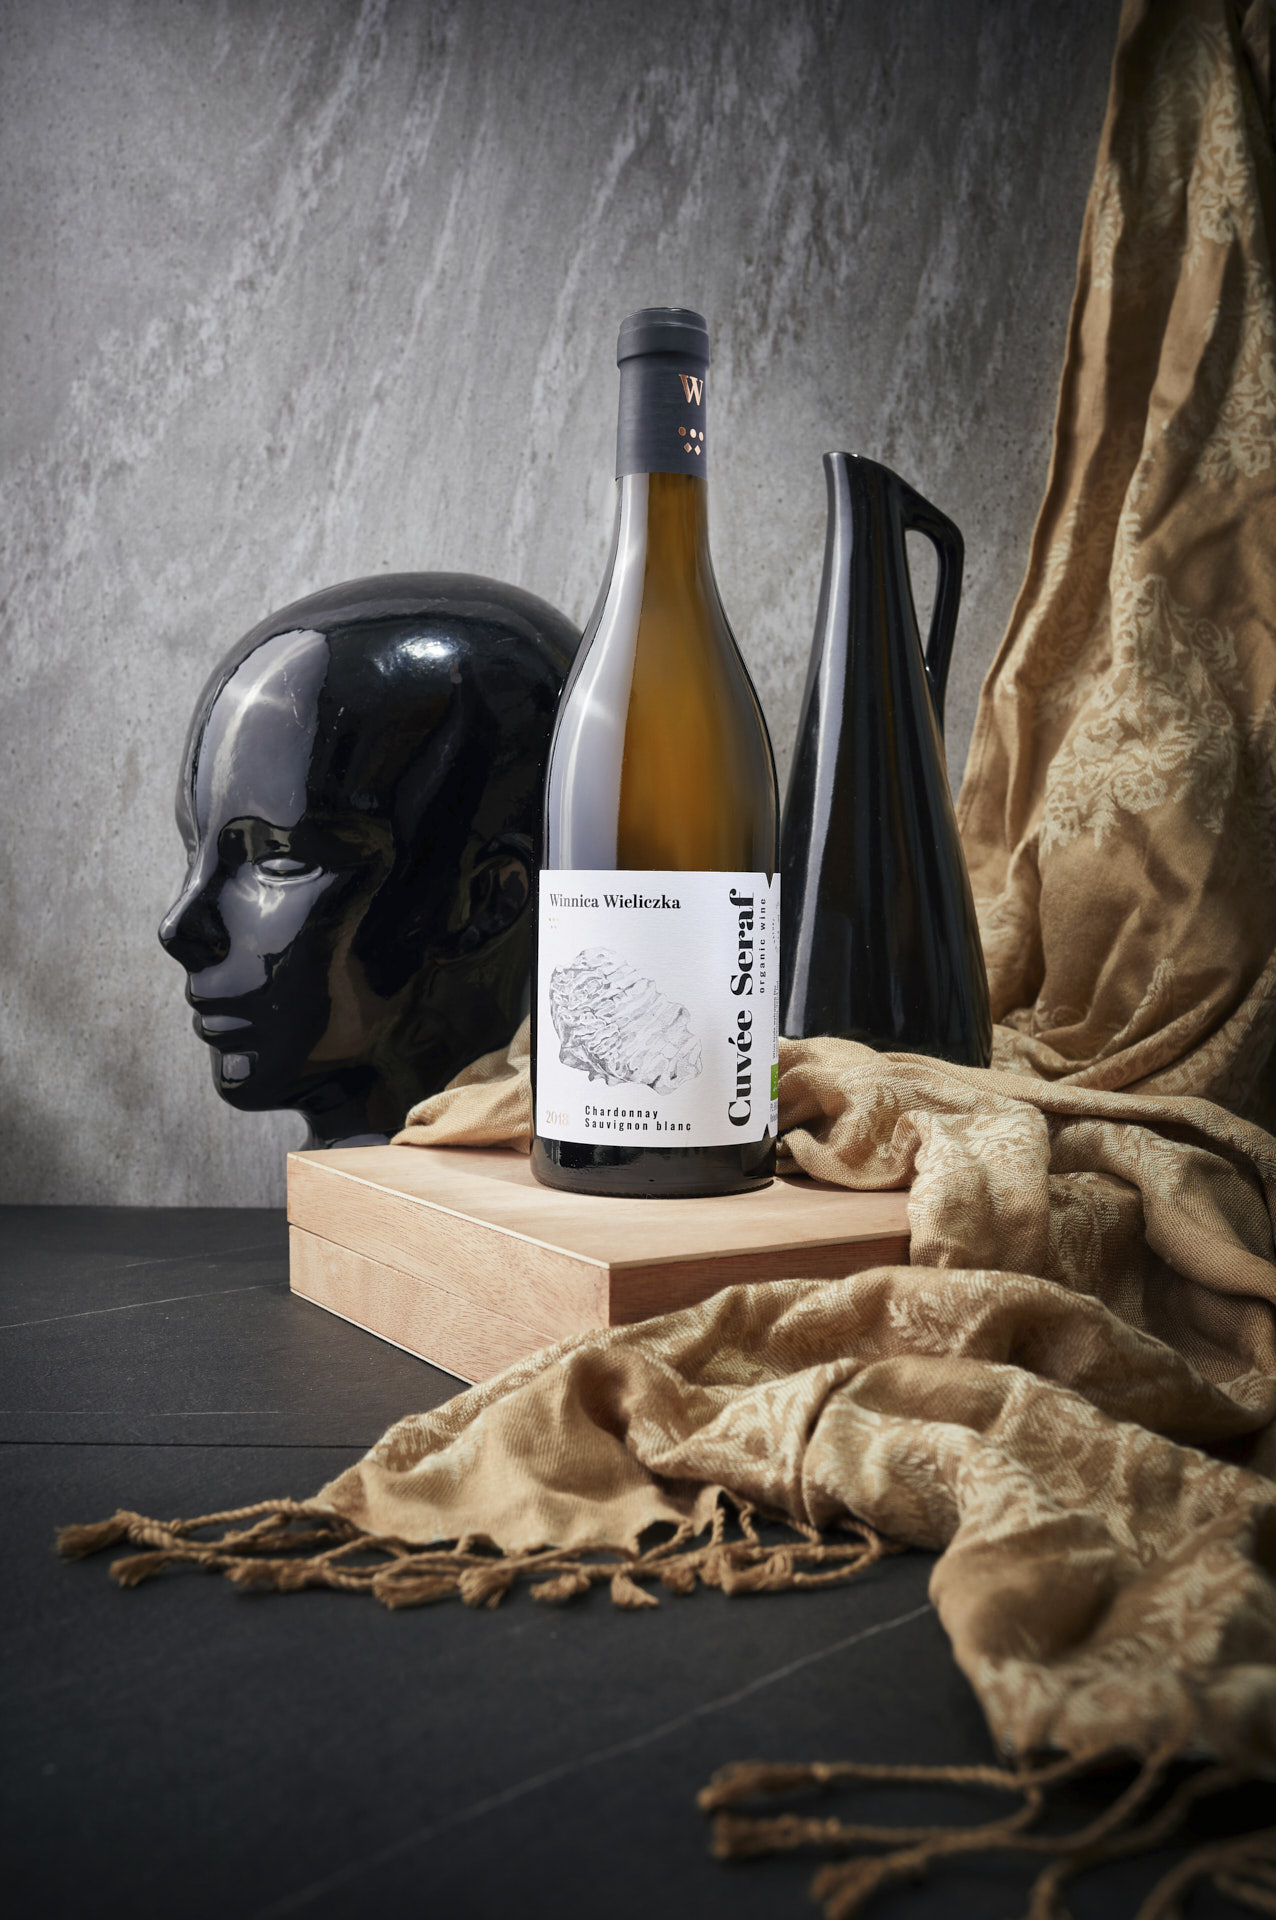 Fotografia reklamowa wina wykonana przez Mateusza Drozda dla Winnicy Wieliczka